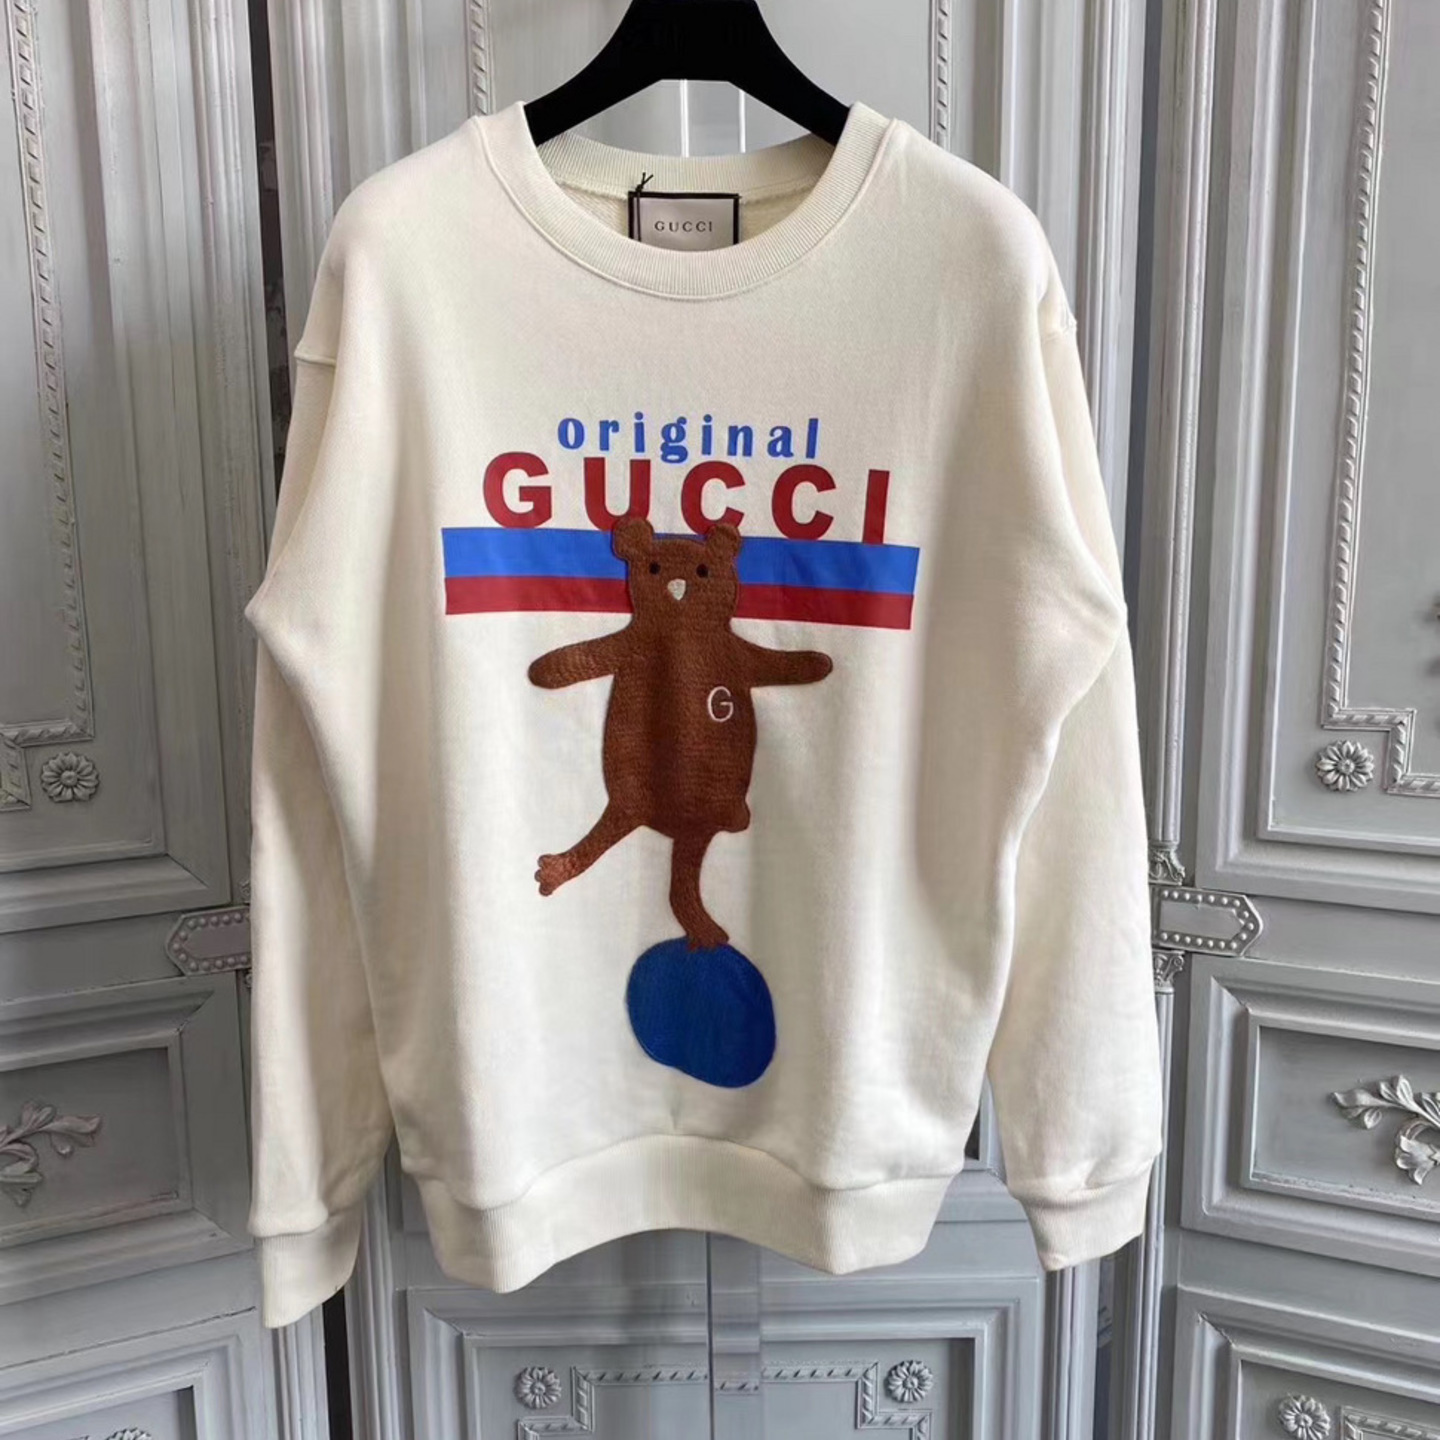  Gucci riginal bear AW20 sweatshirt 